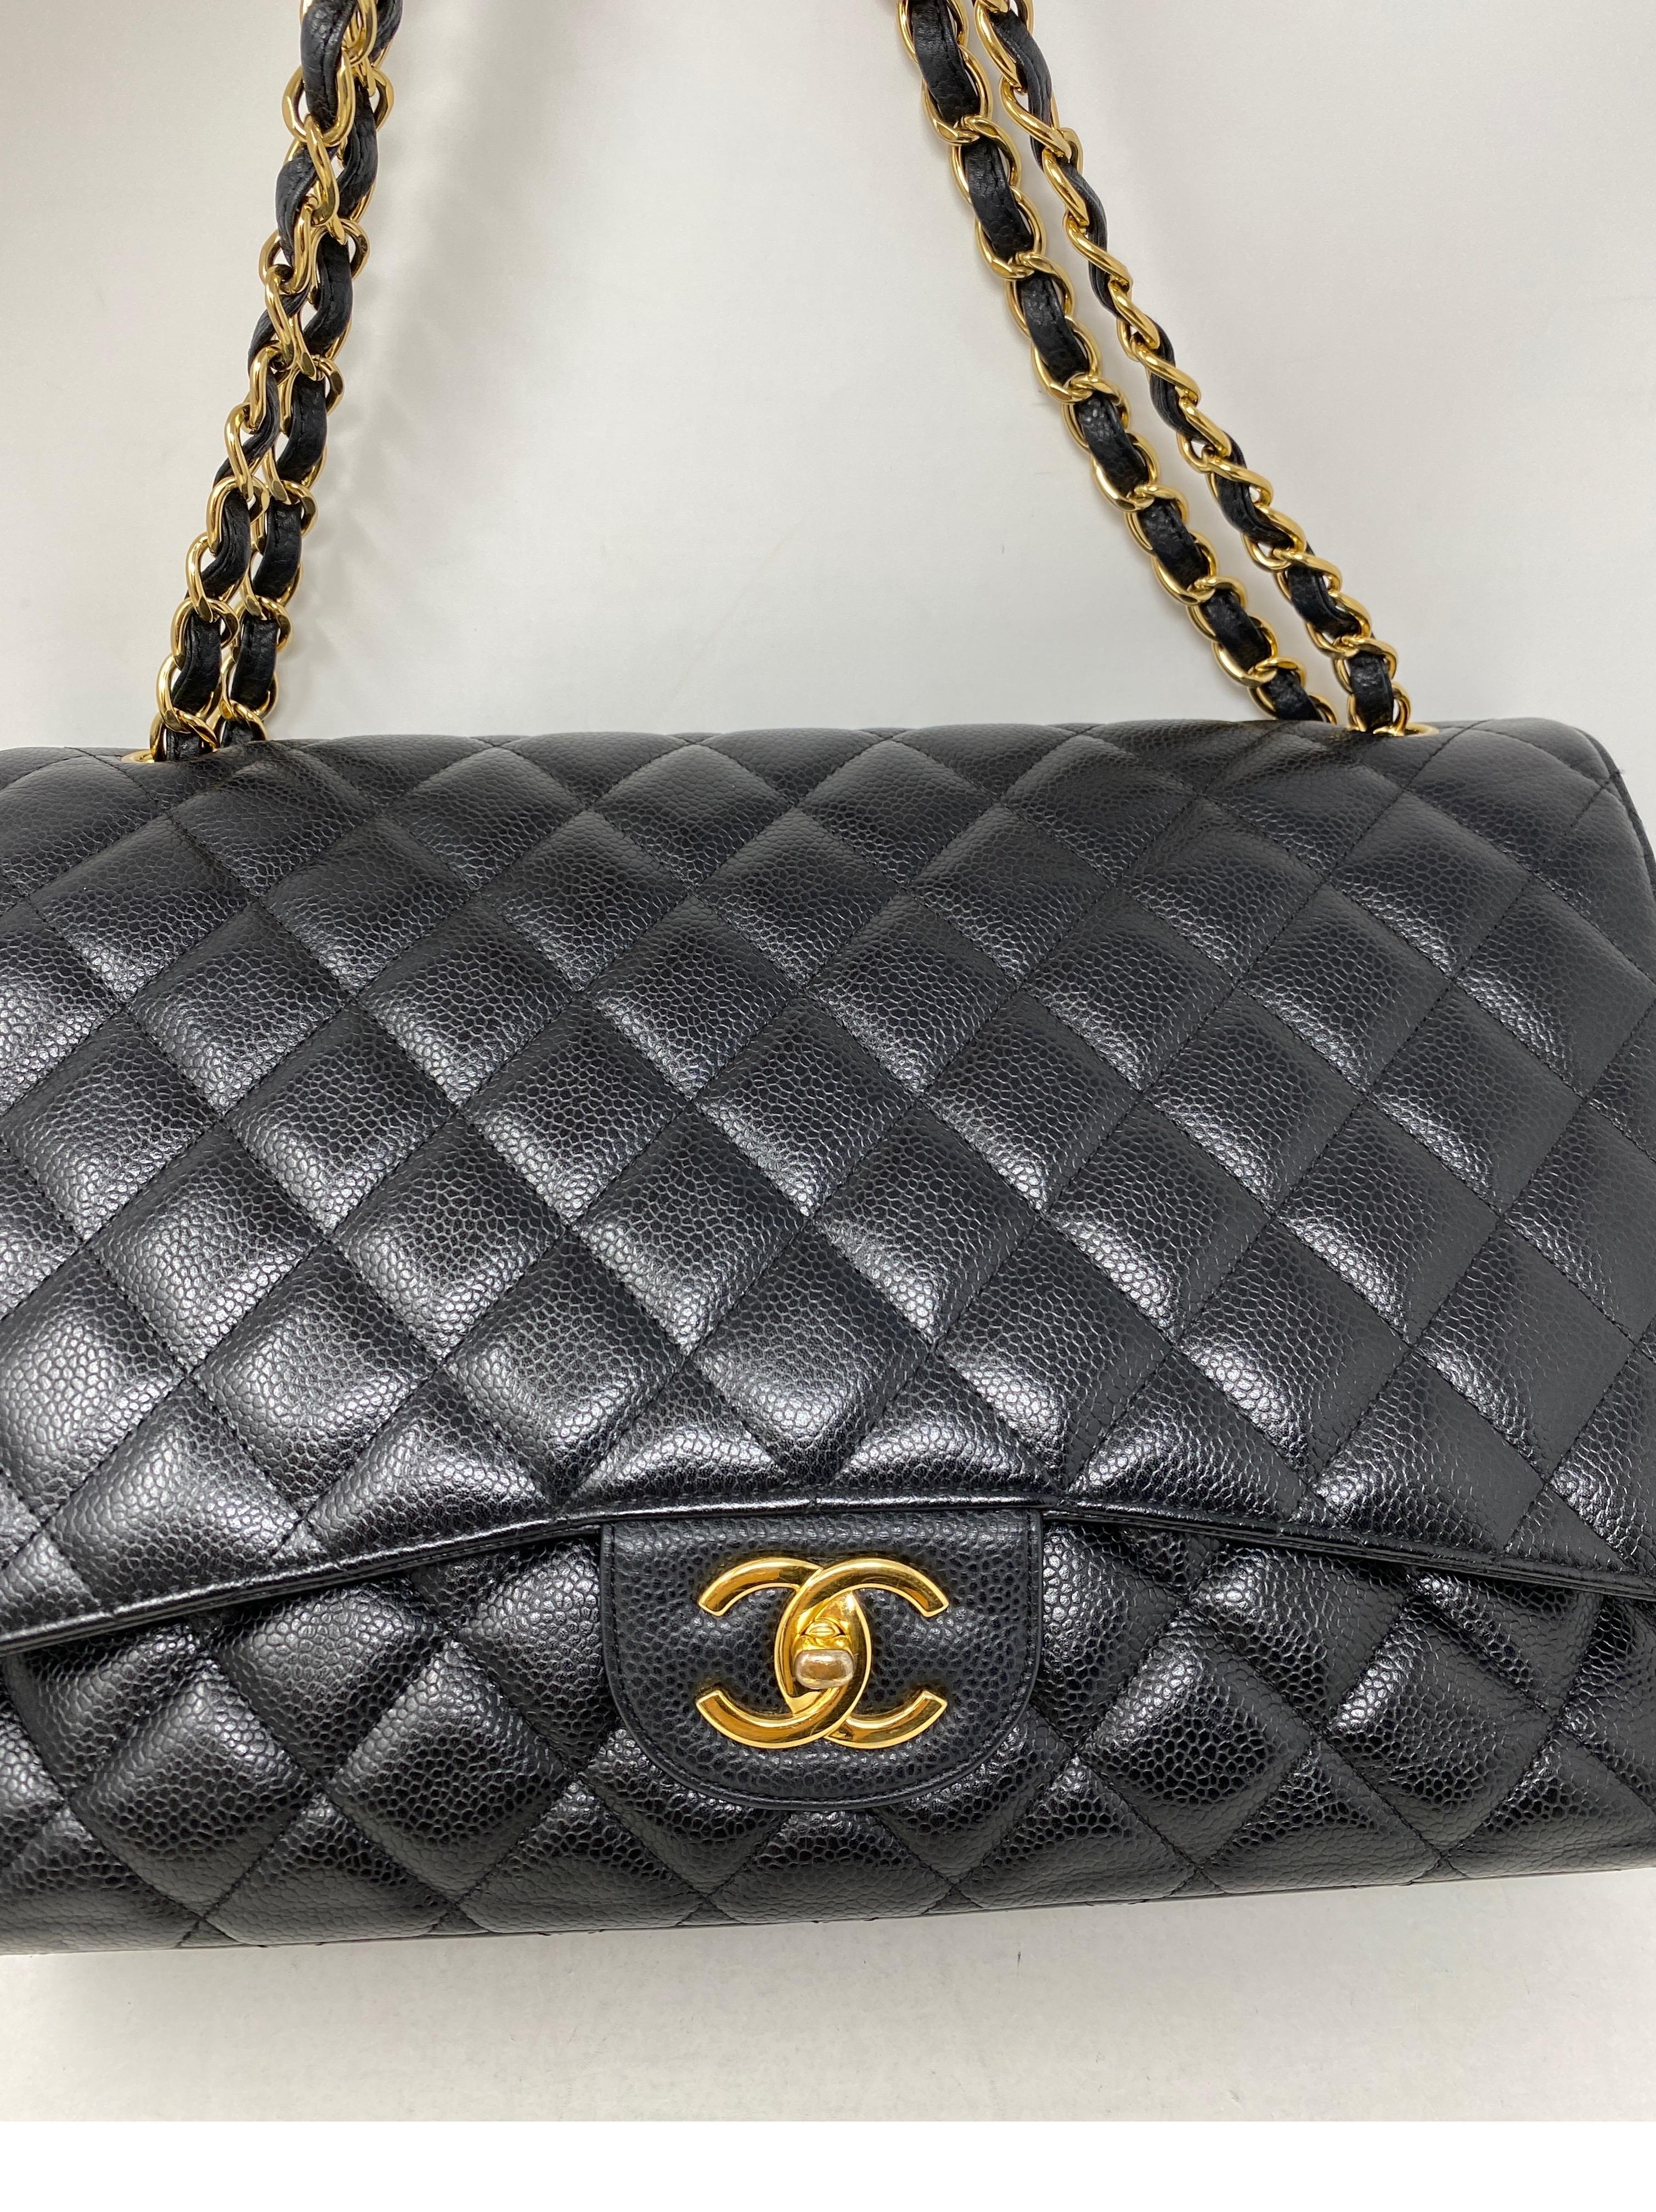 Women's or Men's Chanel Black Maxi Double Flap Bag